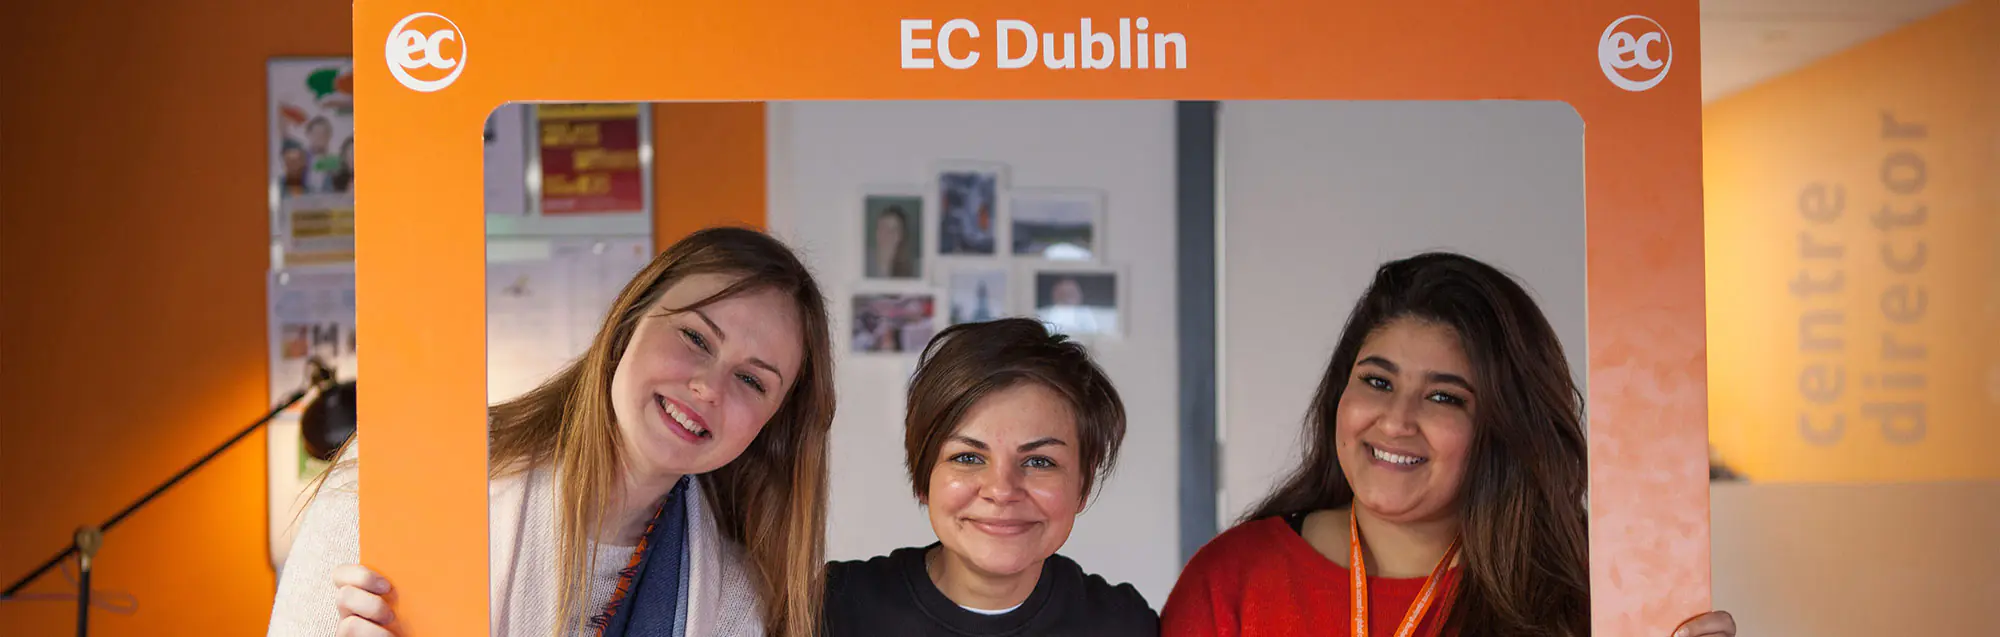 Programas de inglés para niños y adolescentes con EC Dublin 30plus